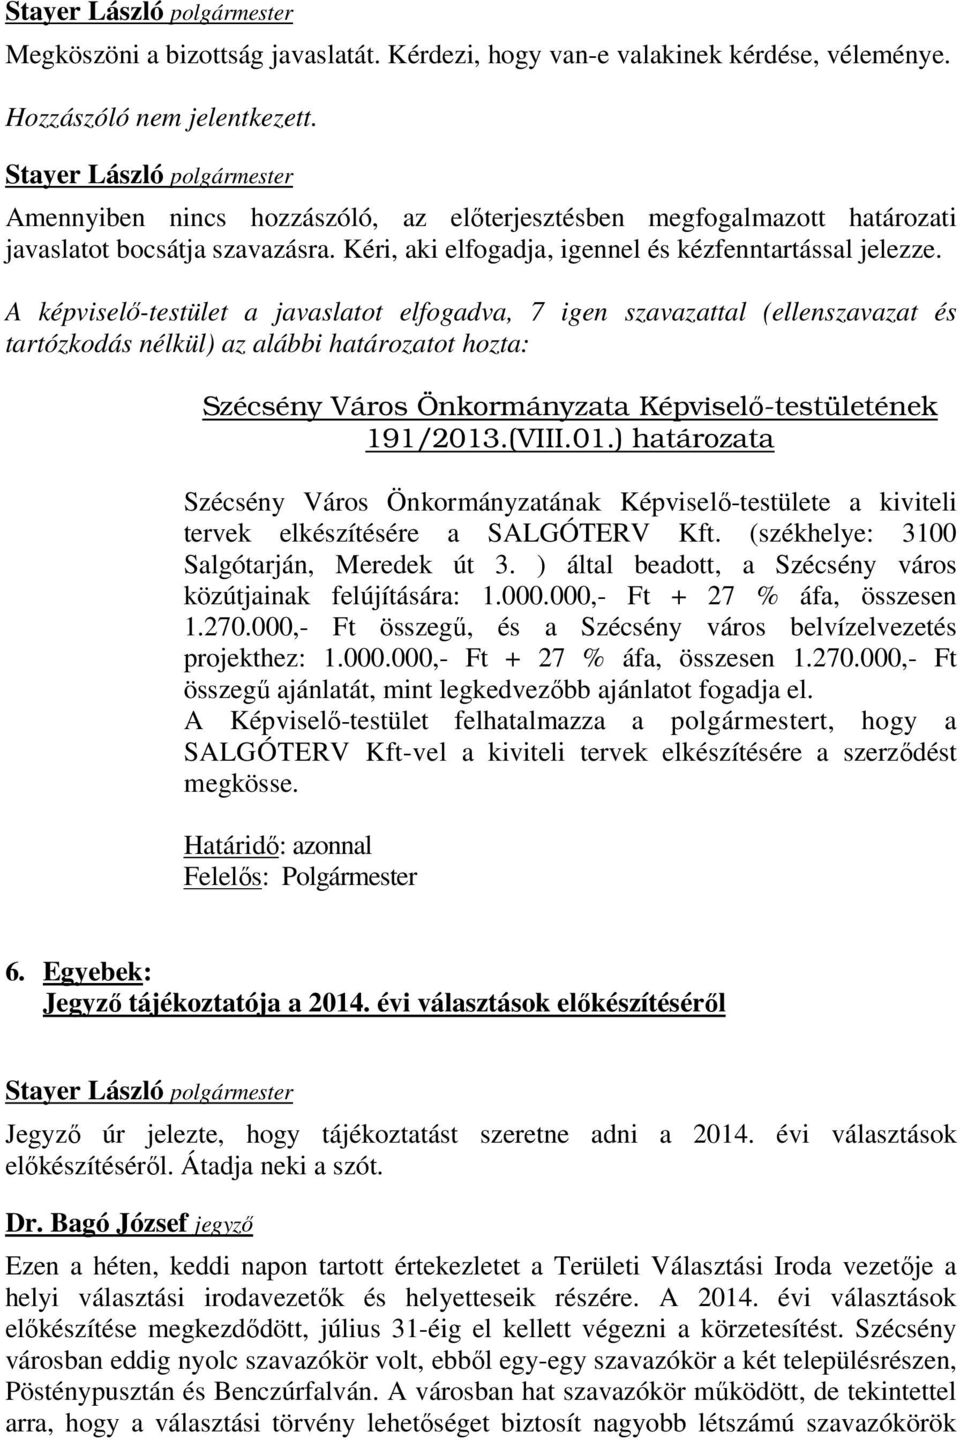 A képviselő-testület a javaslatot elfogadva, 7 igen szavazattal (ellenszavazat és tartózkodás nélkül) az alábbi határozatot hozta: Szécsény Város Önkormányzata Képviselı-testületének 191/2013.(VIII.